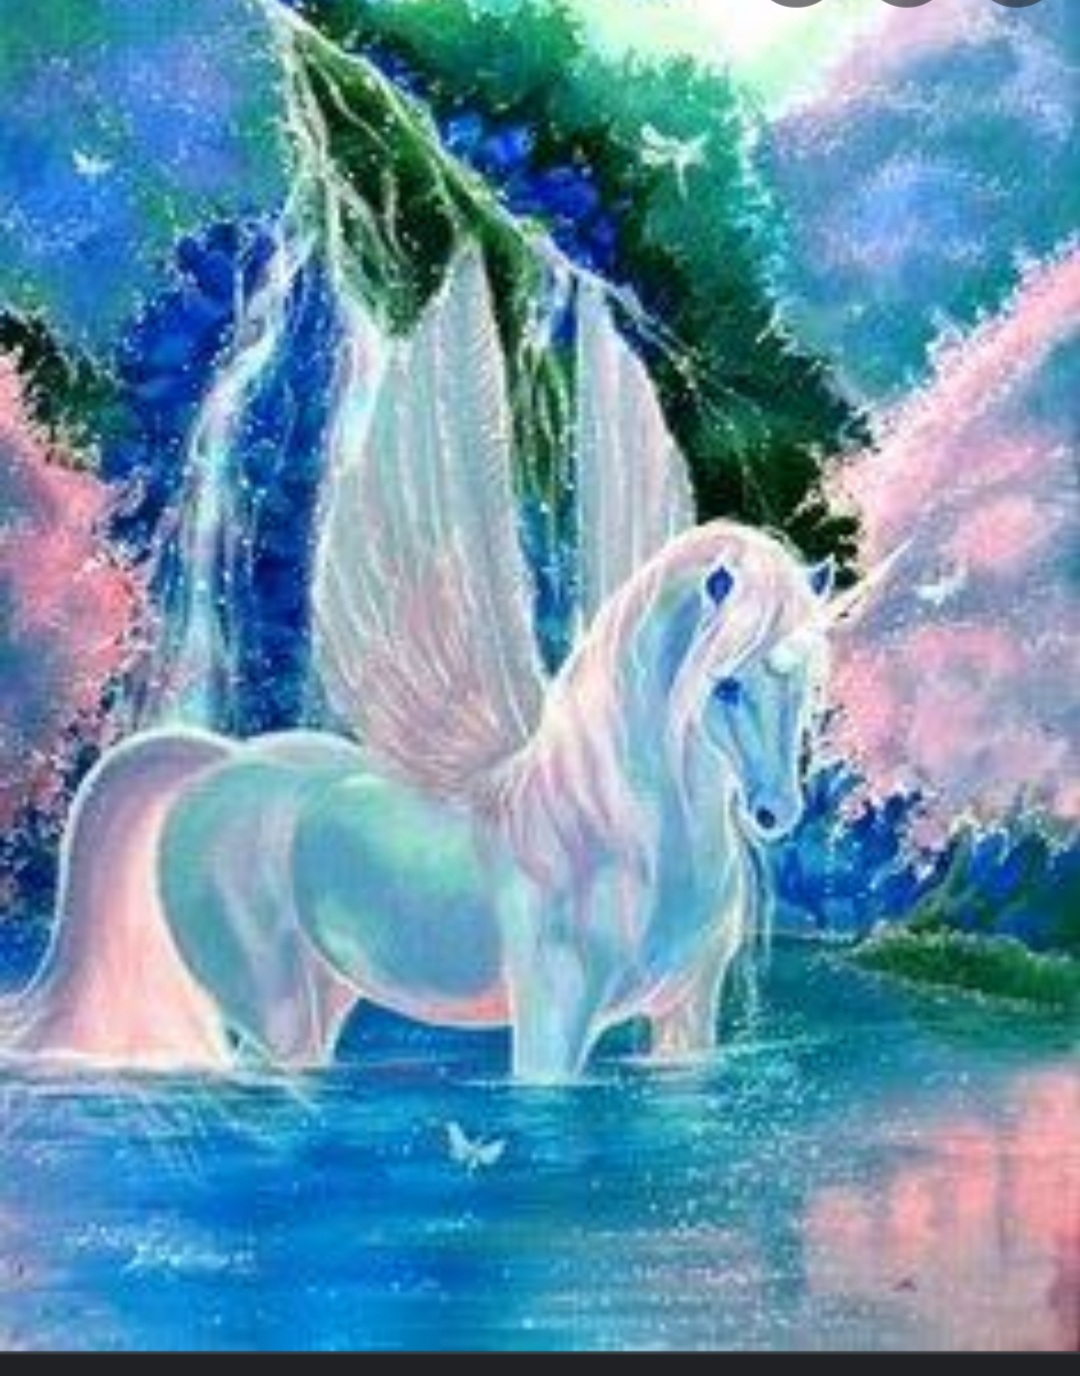 White magical horse